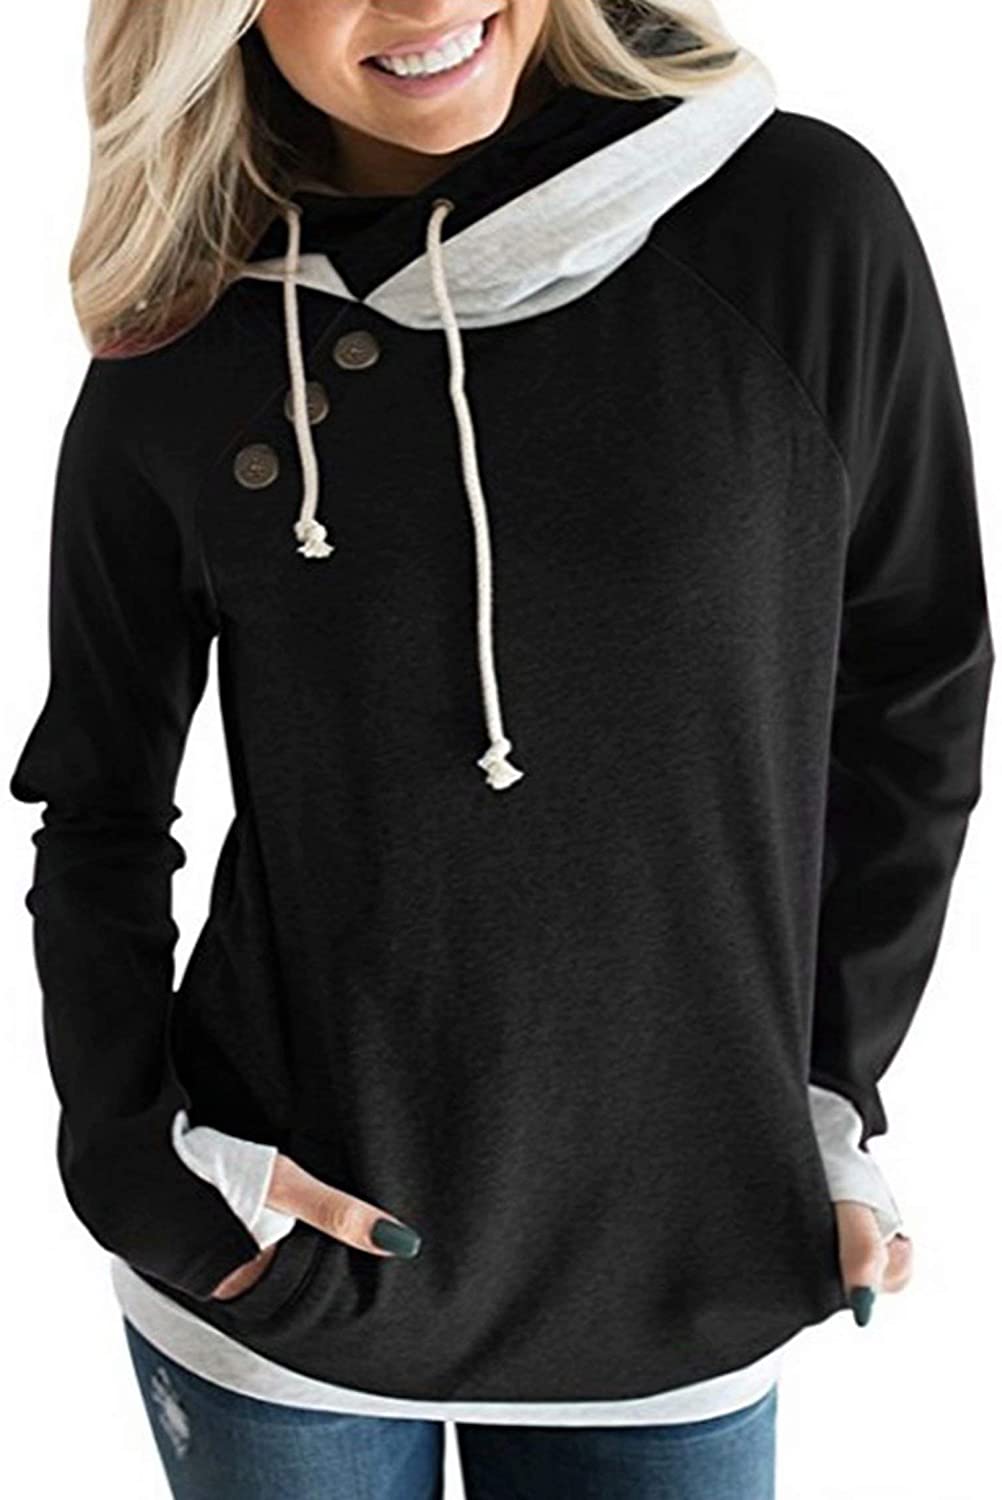 Womens Hooded Sweatshirt Loose Casual Hoodies Tops Tee Jumper Pullover Sweaters 